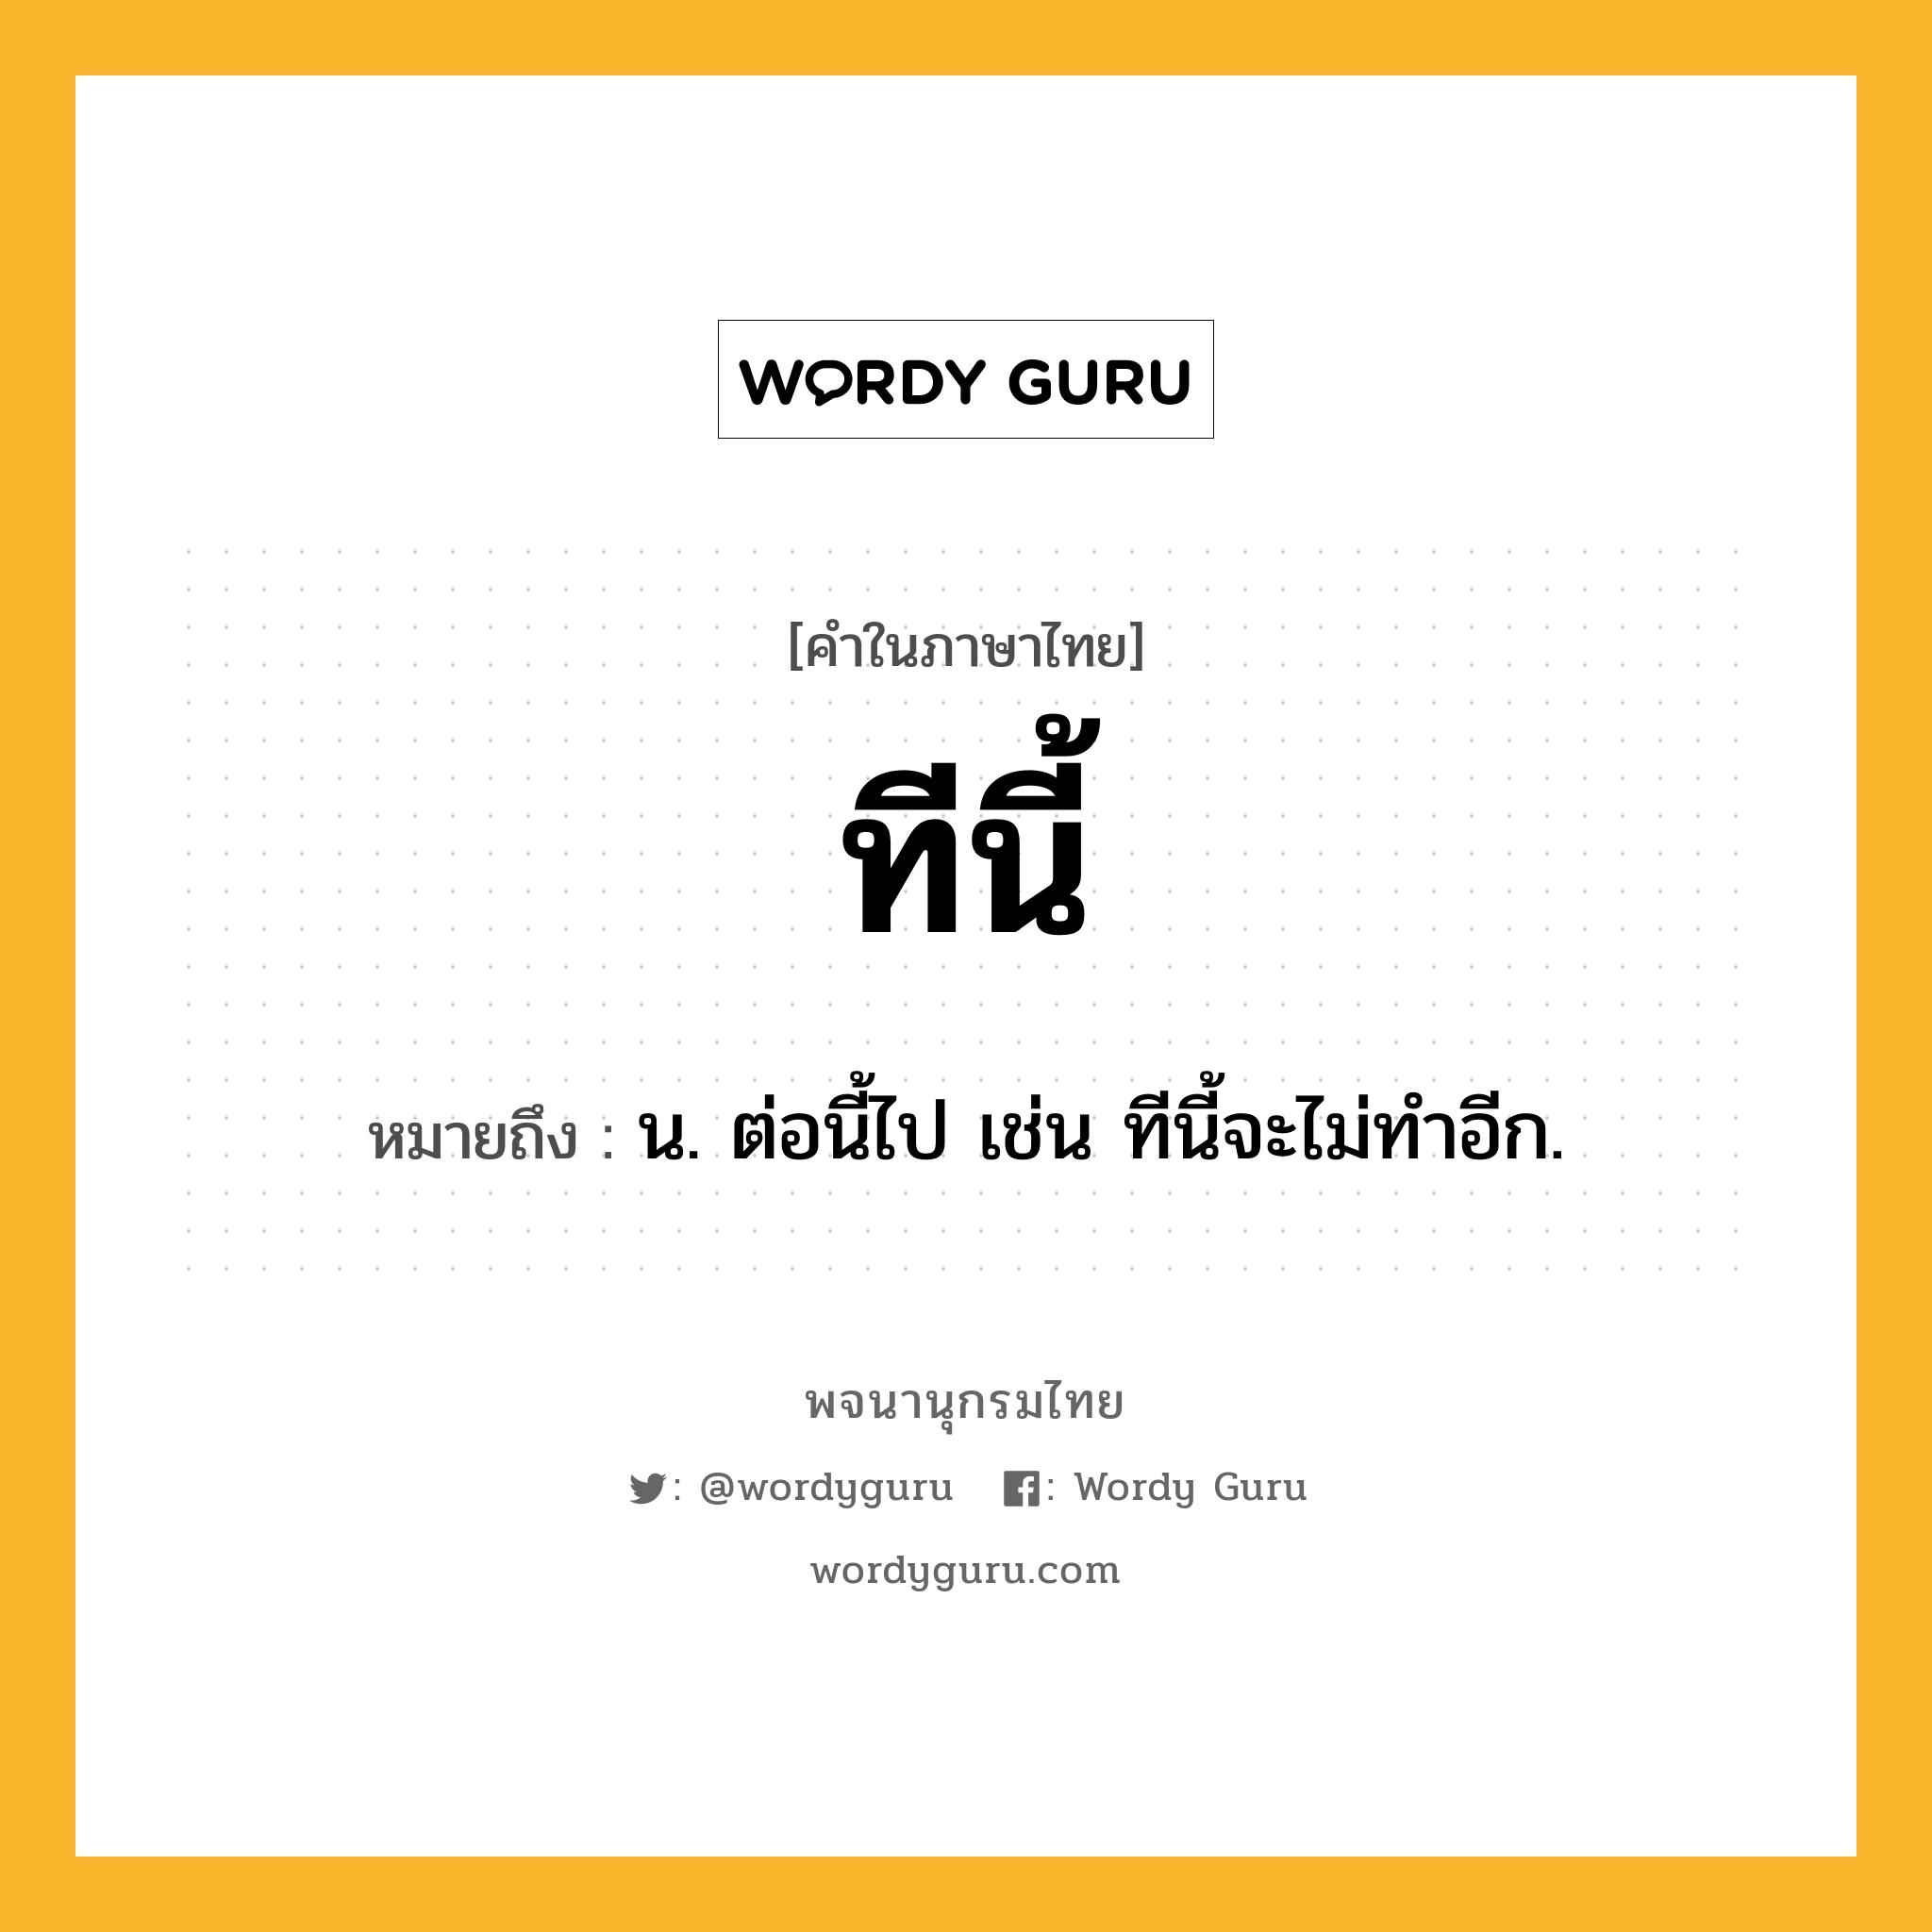 ทีนี้ หมายถึงอะไร?, คำในภาษาไทย ทีนี้ หมายถึง น. ต่อนี้ไป เช่น ทีนี้จะไม่ทําอีก.